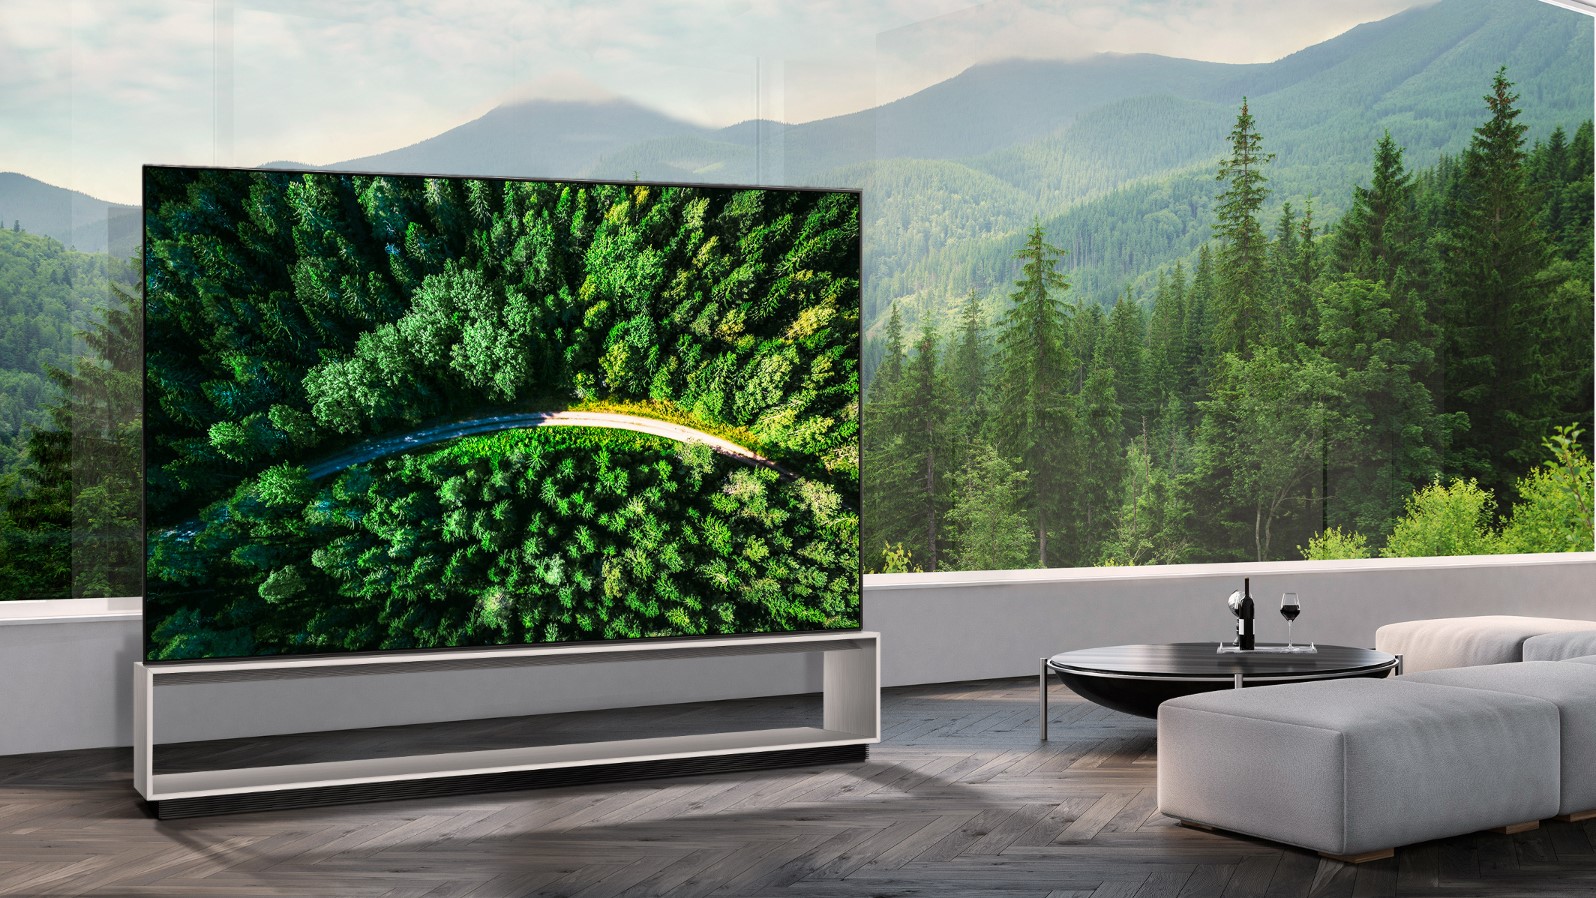 LG Z9 OLED 8K TV (OLED88Z9) review | TechRadar